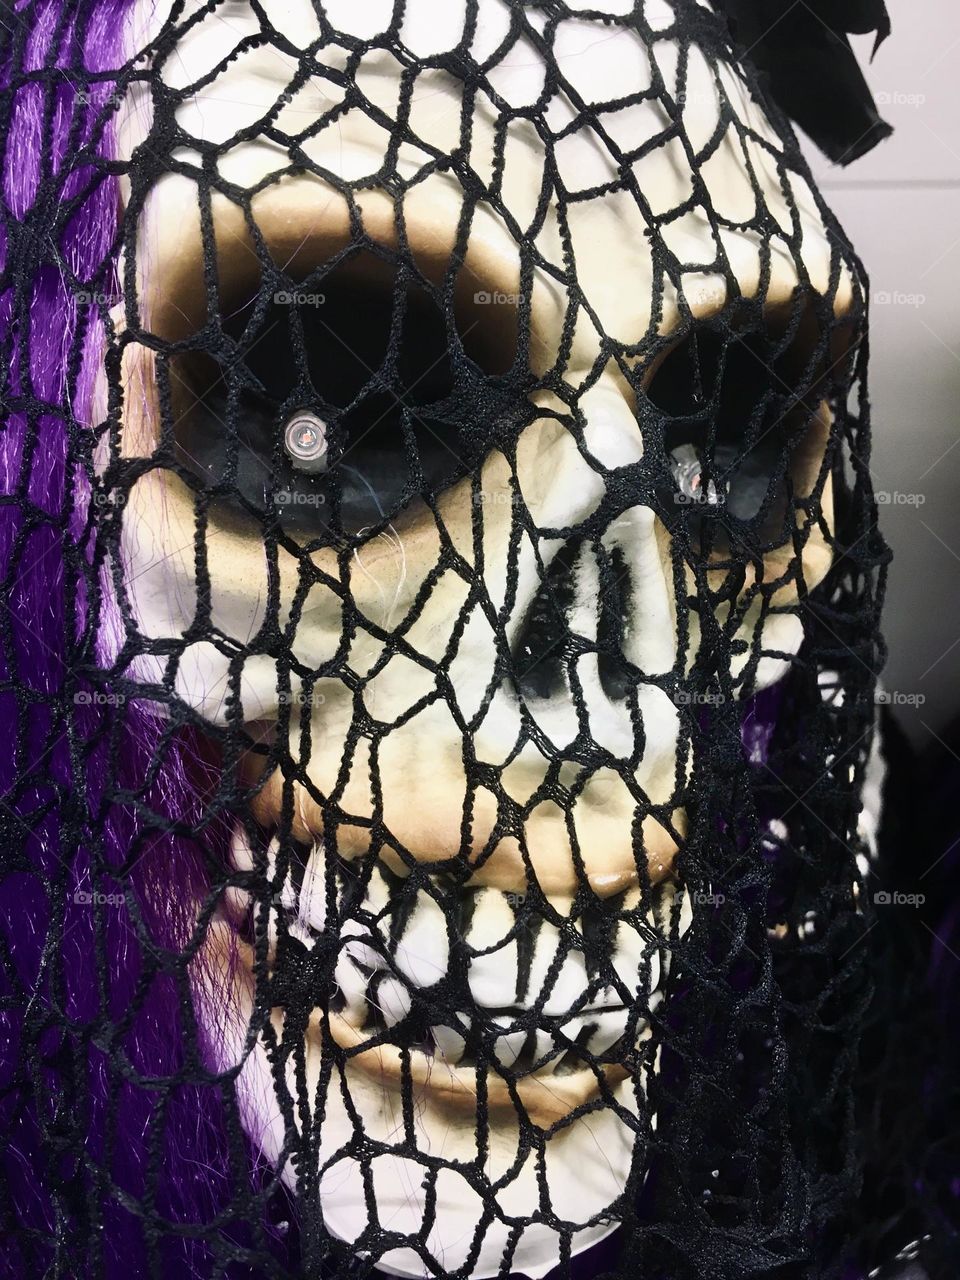 Scary Halloween skull